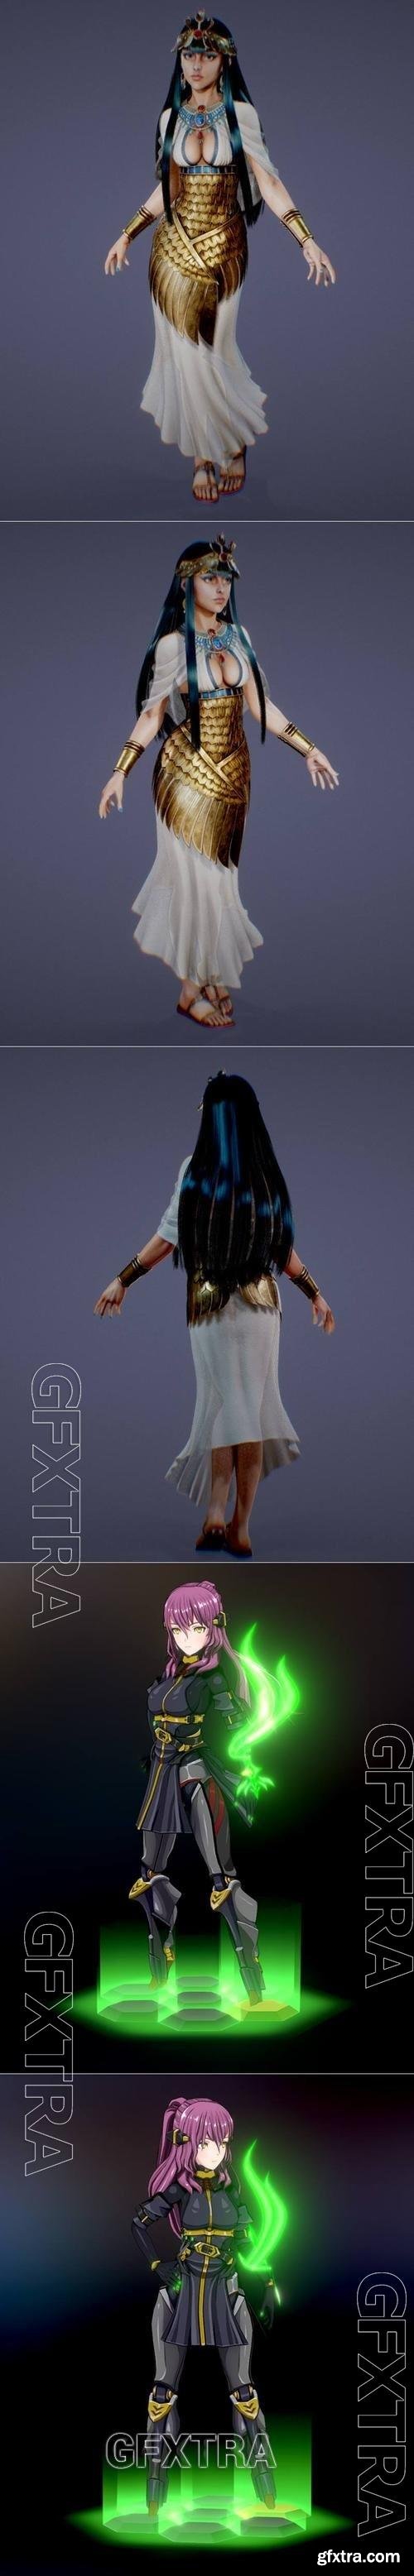 Queen Hatshepsut and Flieger 3D